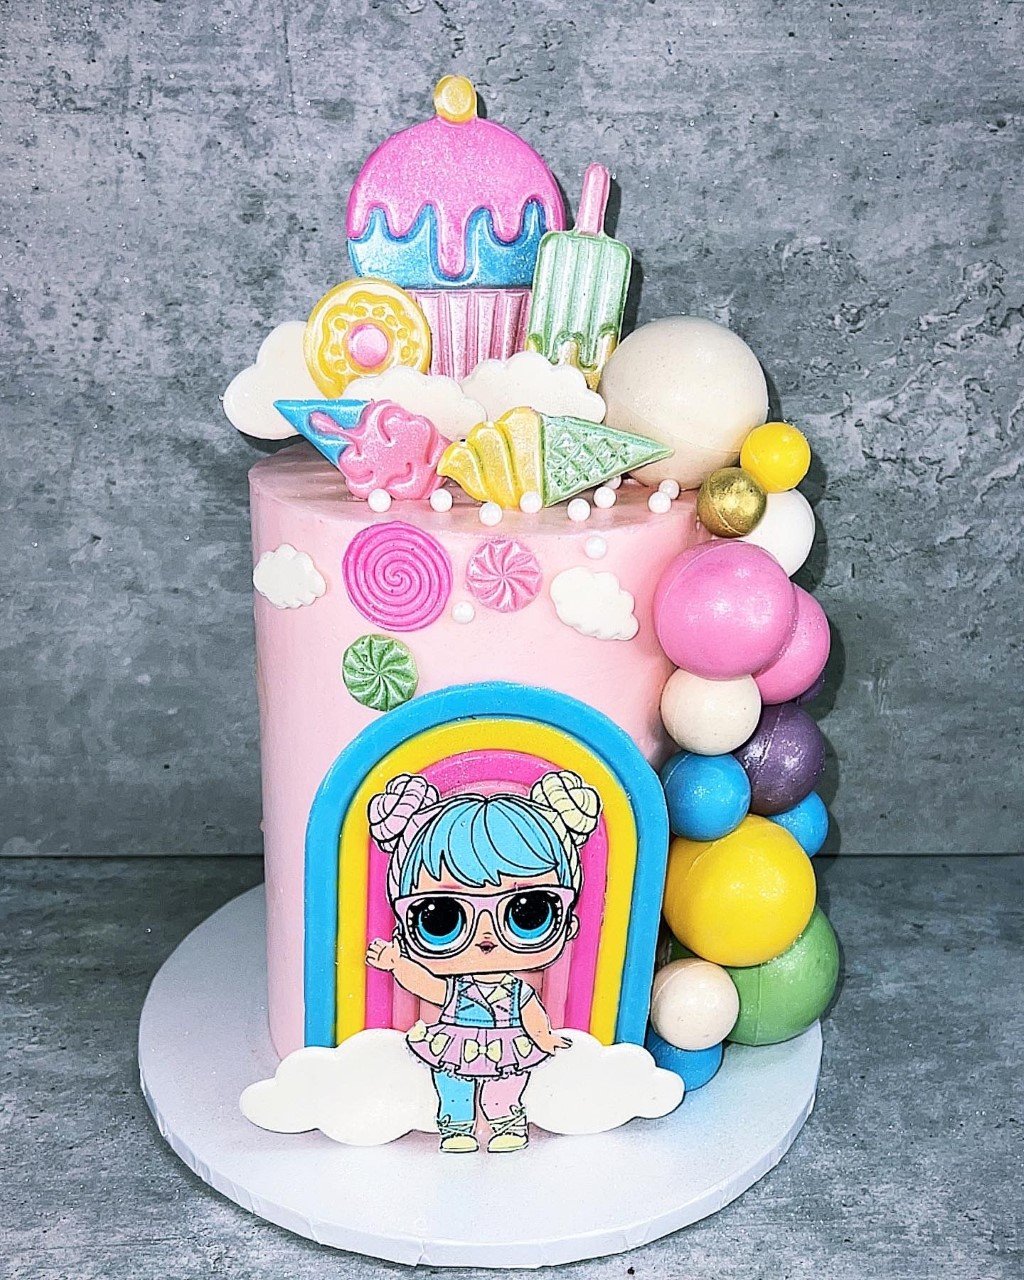 SimasBaking_custom_birthday_cake14.jpeg